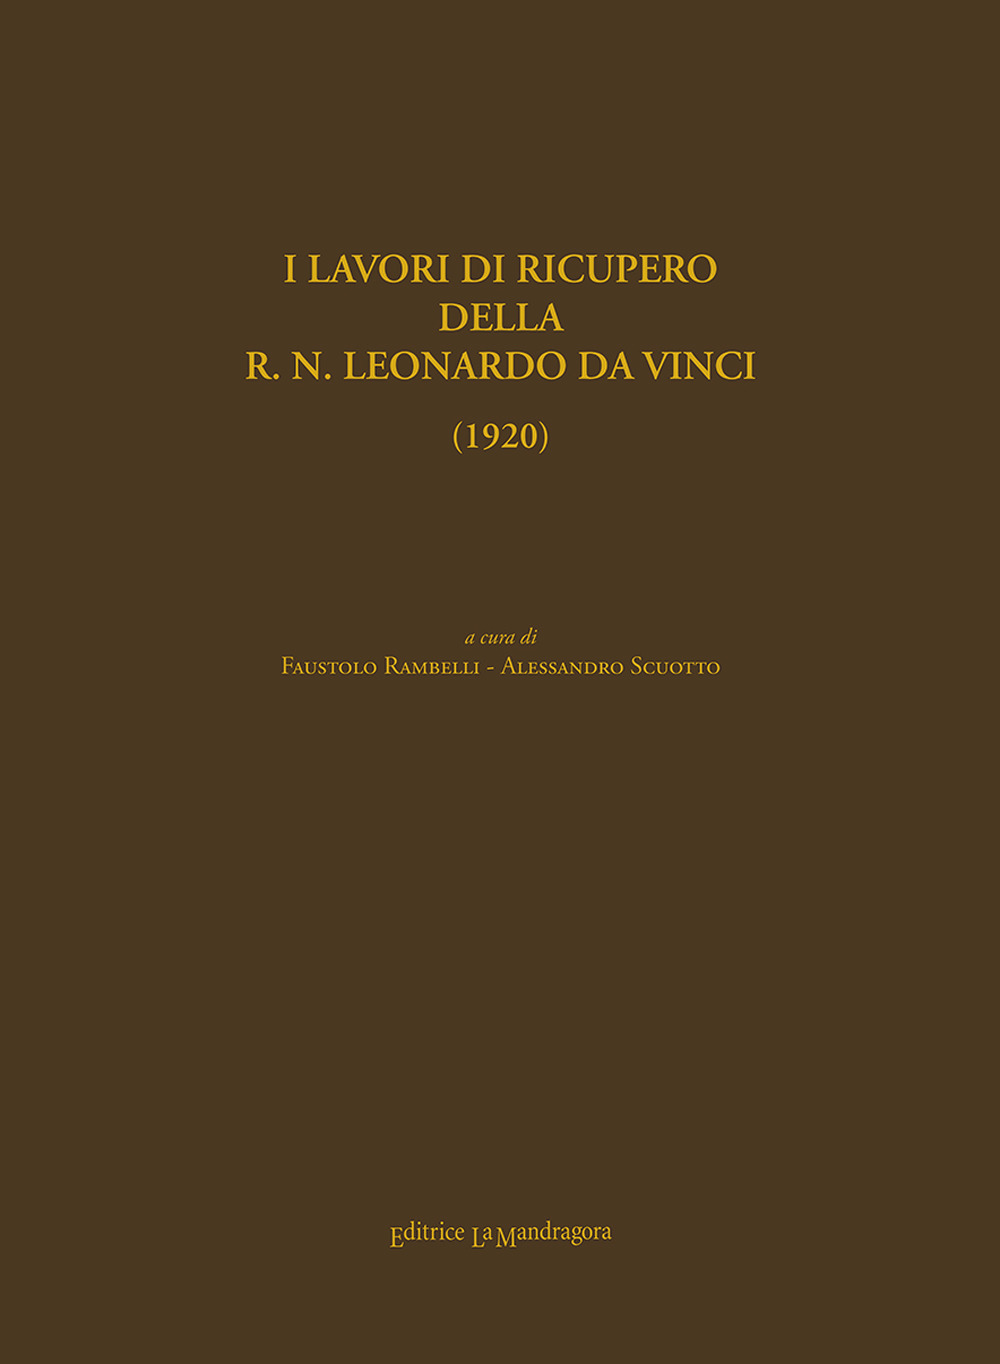 I lavori di recupero della R.N. Leonardo Da Vinci (1920). Ediz. ampliata